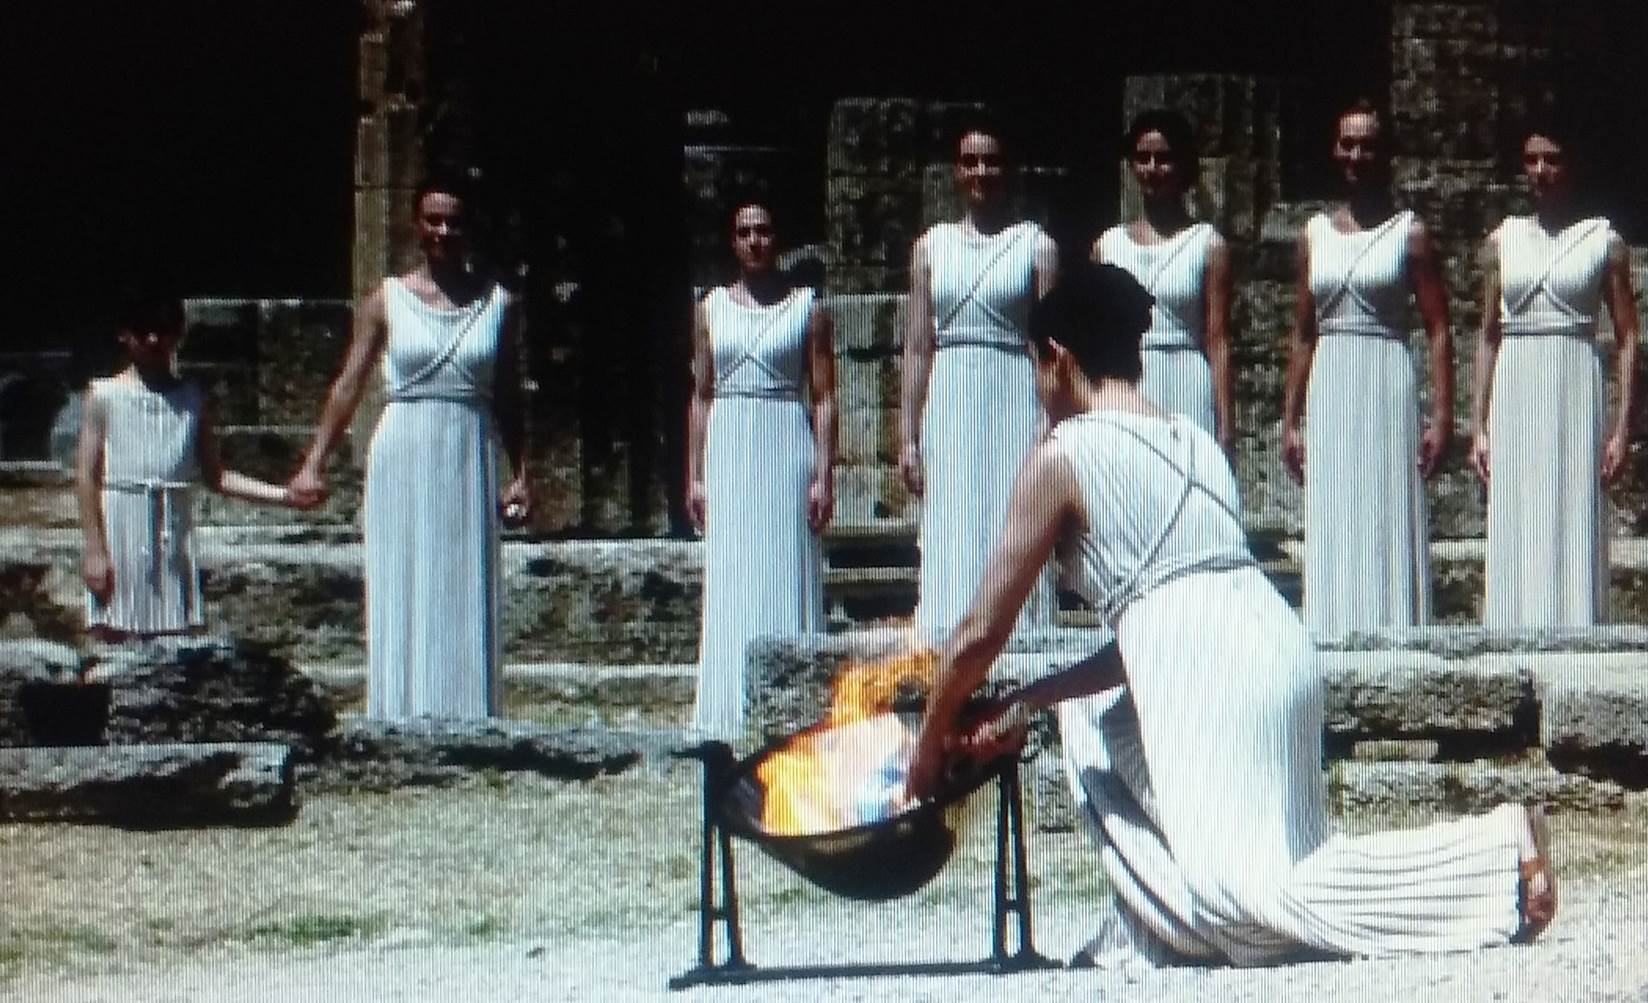 Jogos Olímpicos da Grécia Antiga: a origem da Olimpíada da Era Moderna